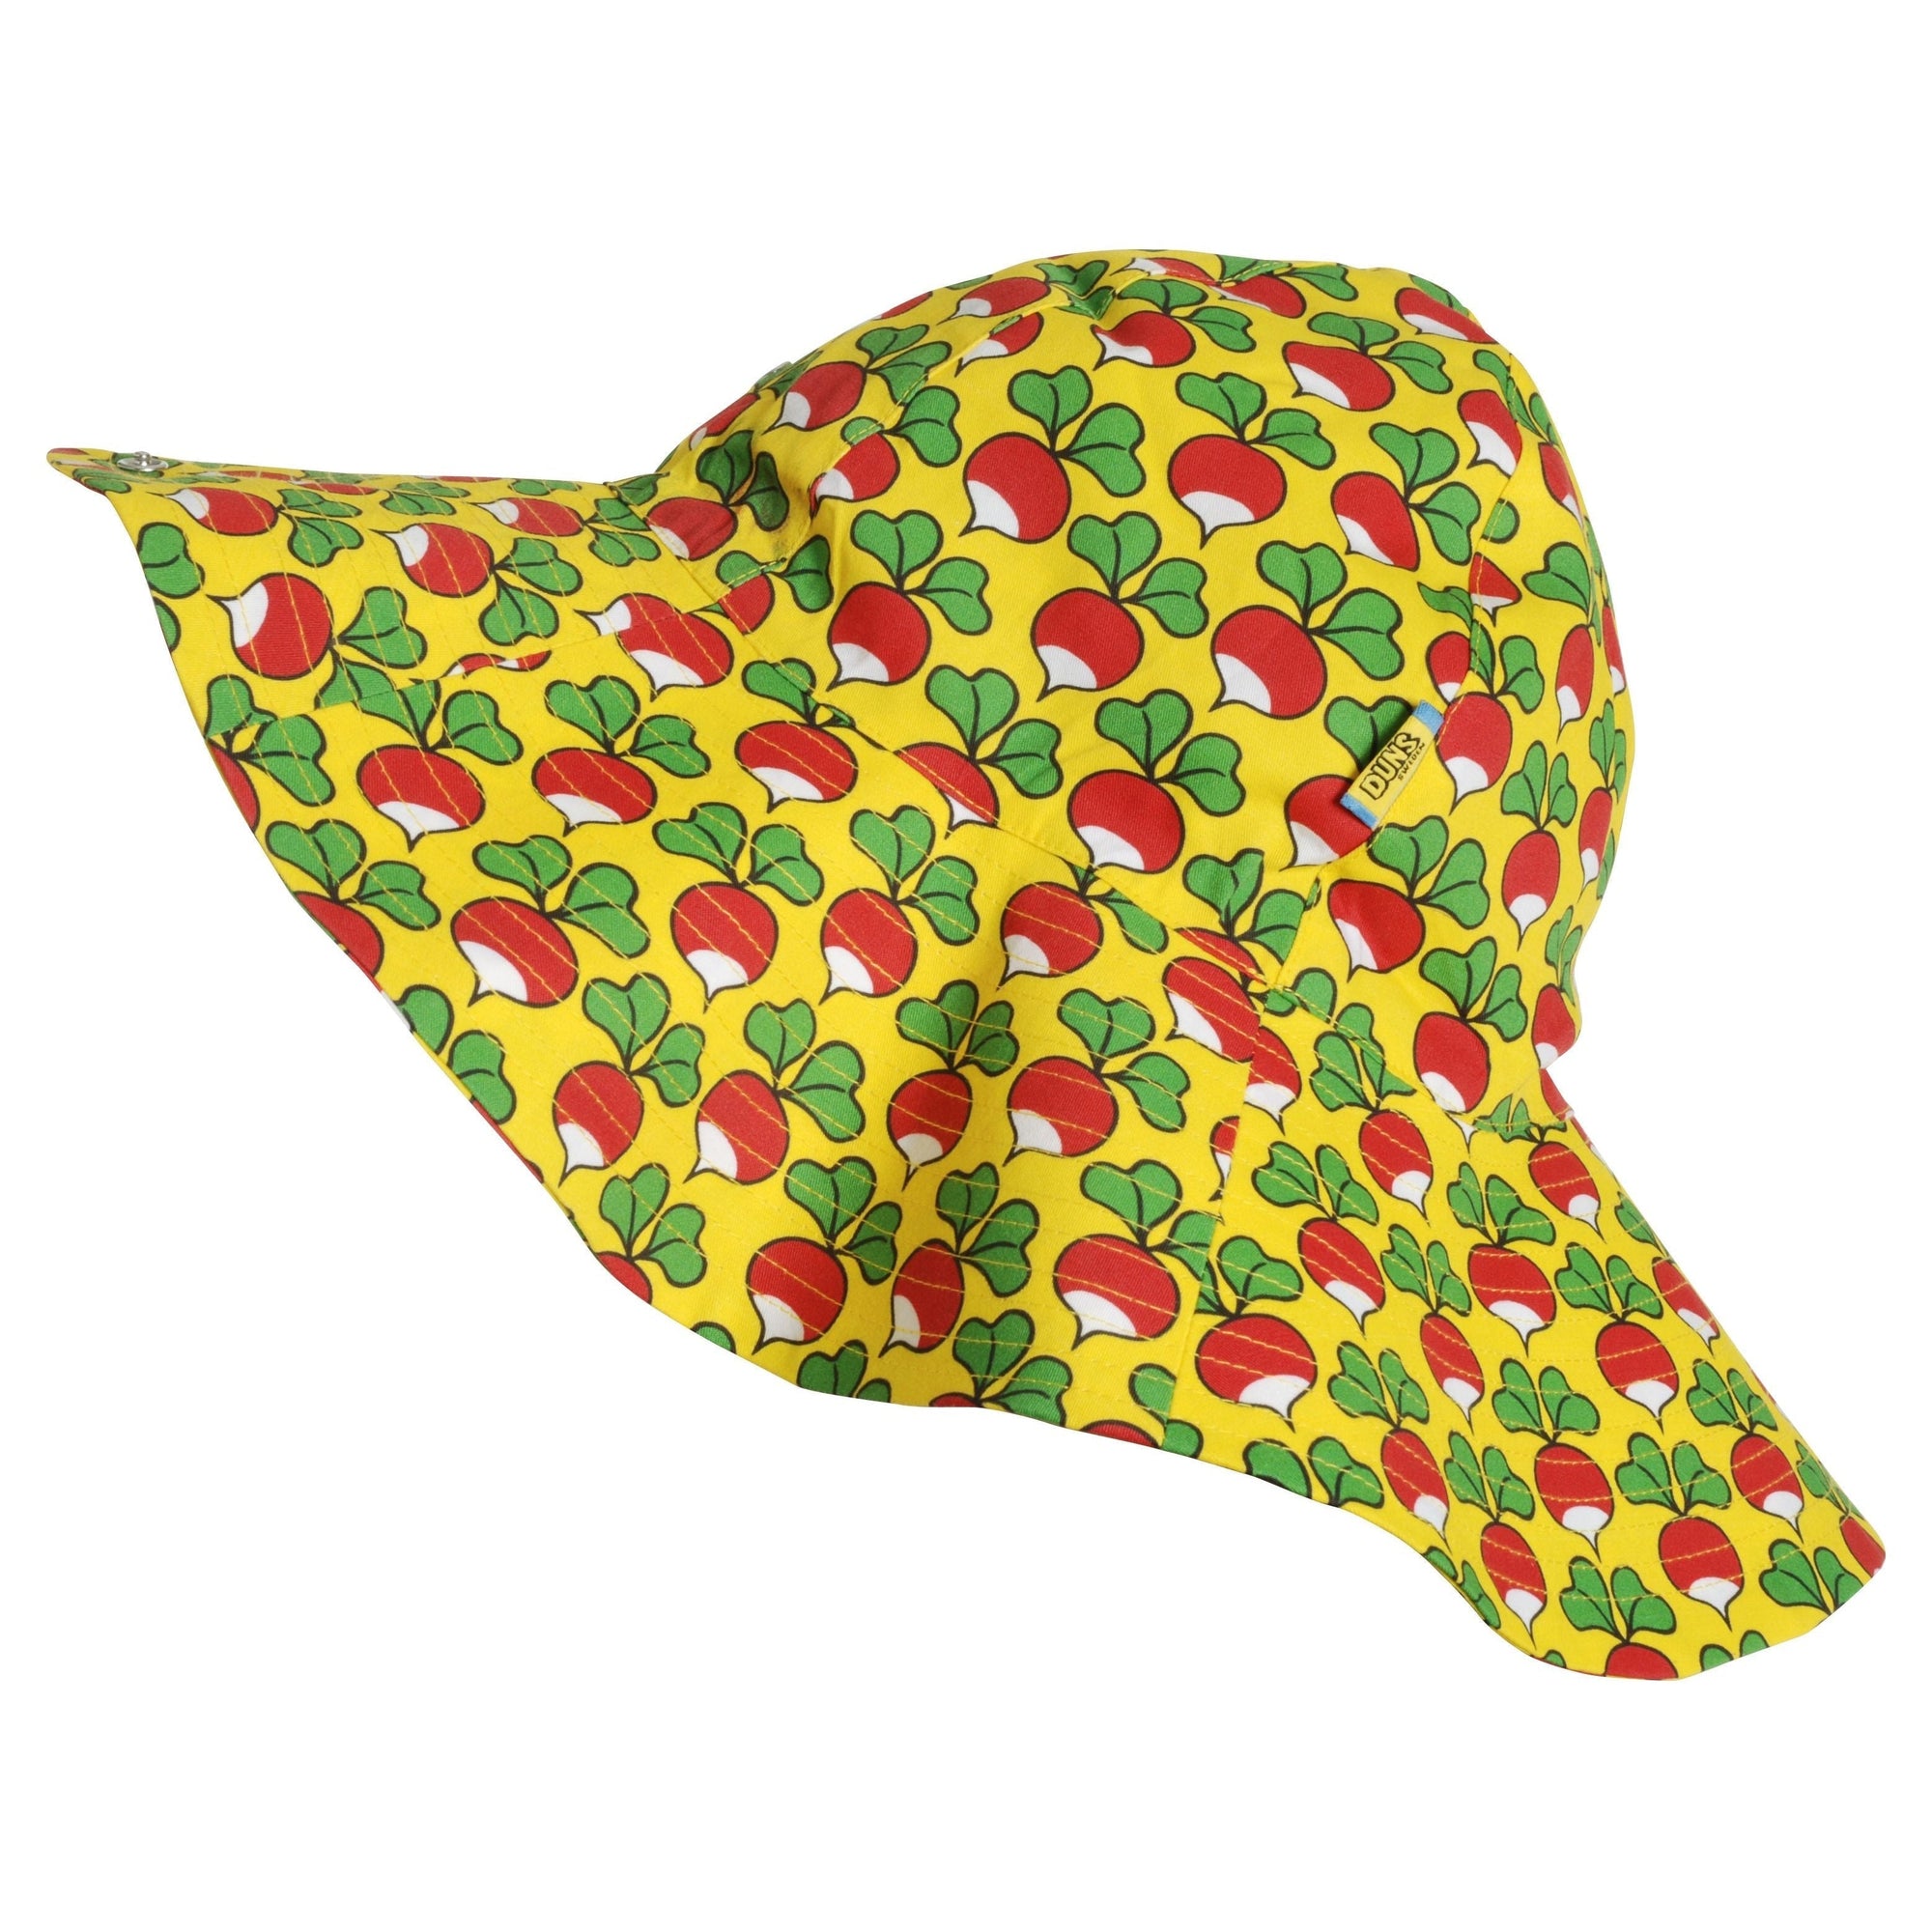 Radish - Buttercup Woven Sunhat - 1 Left Size XL-Duns Sweden-Modern Rascals